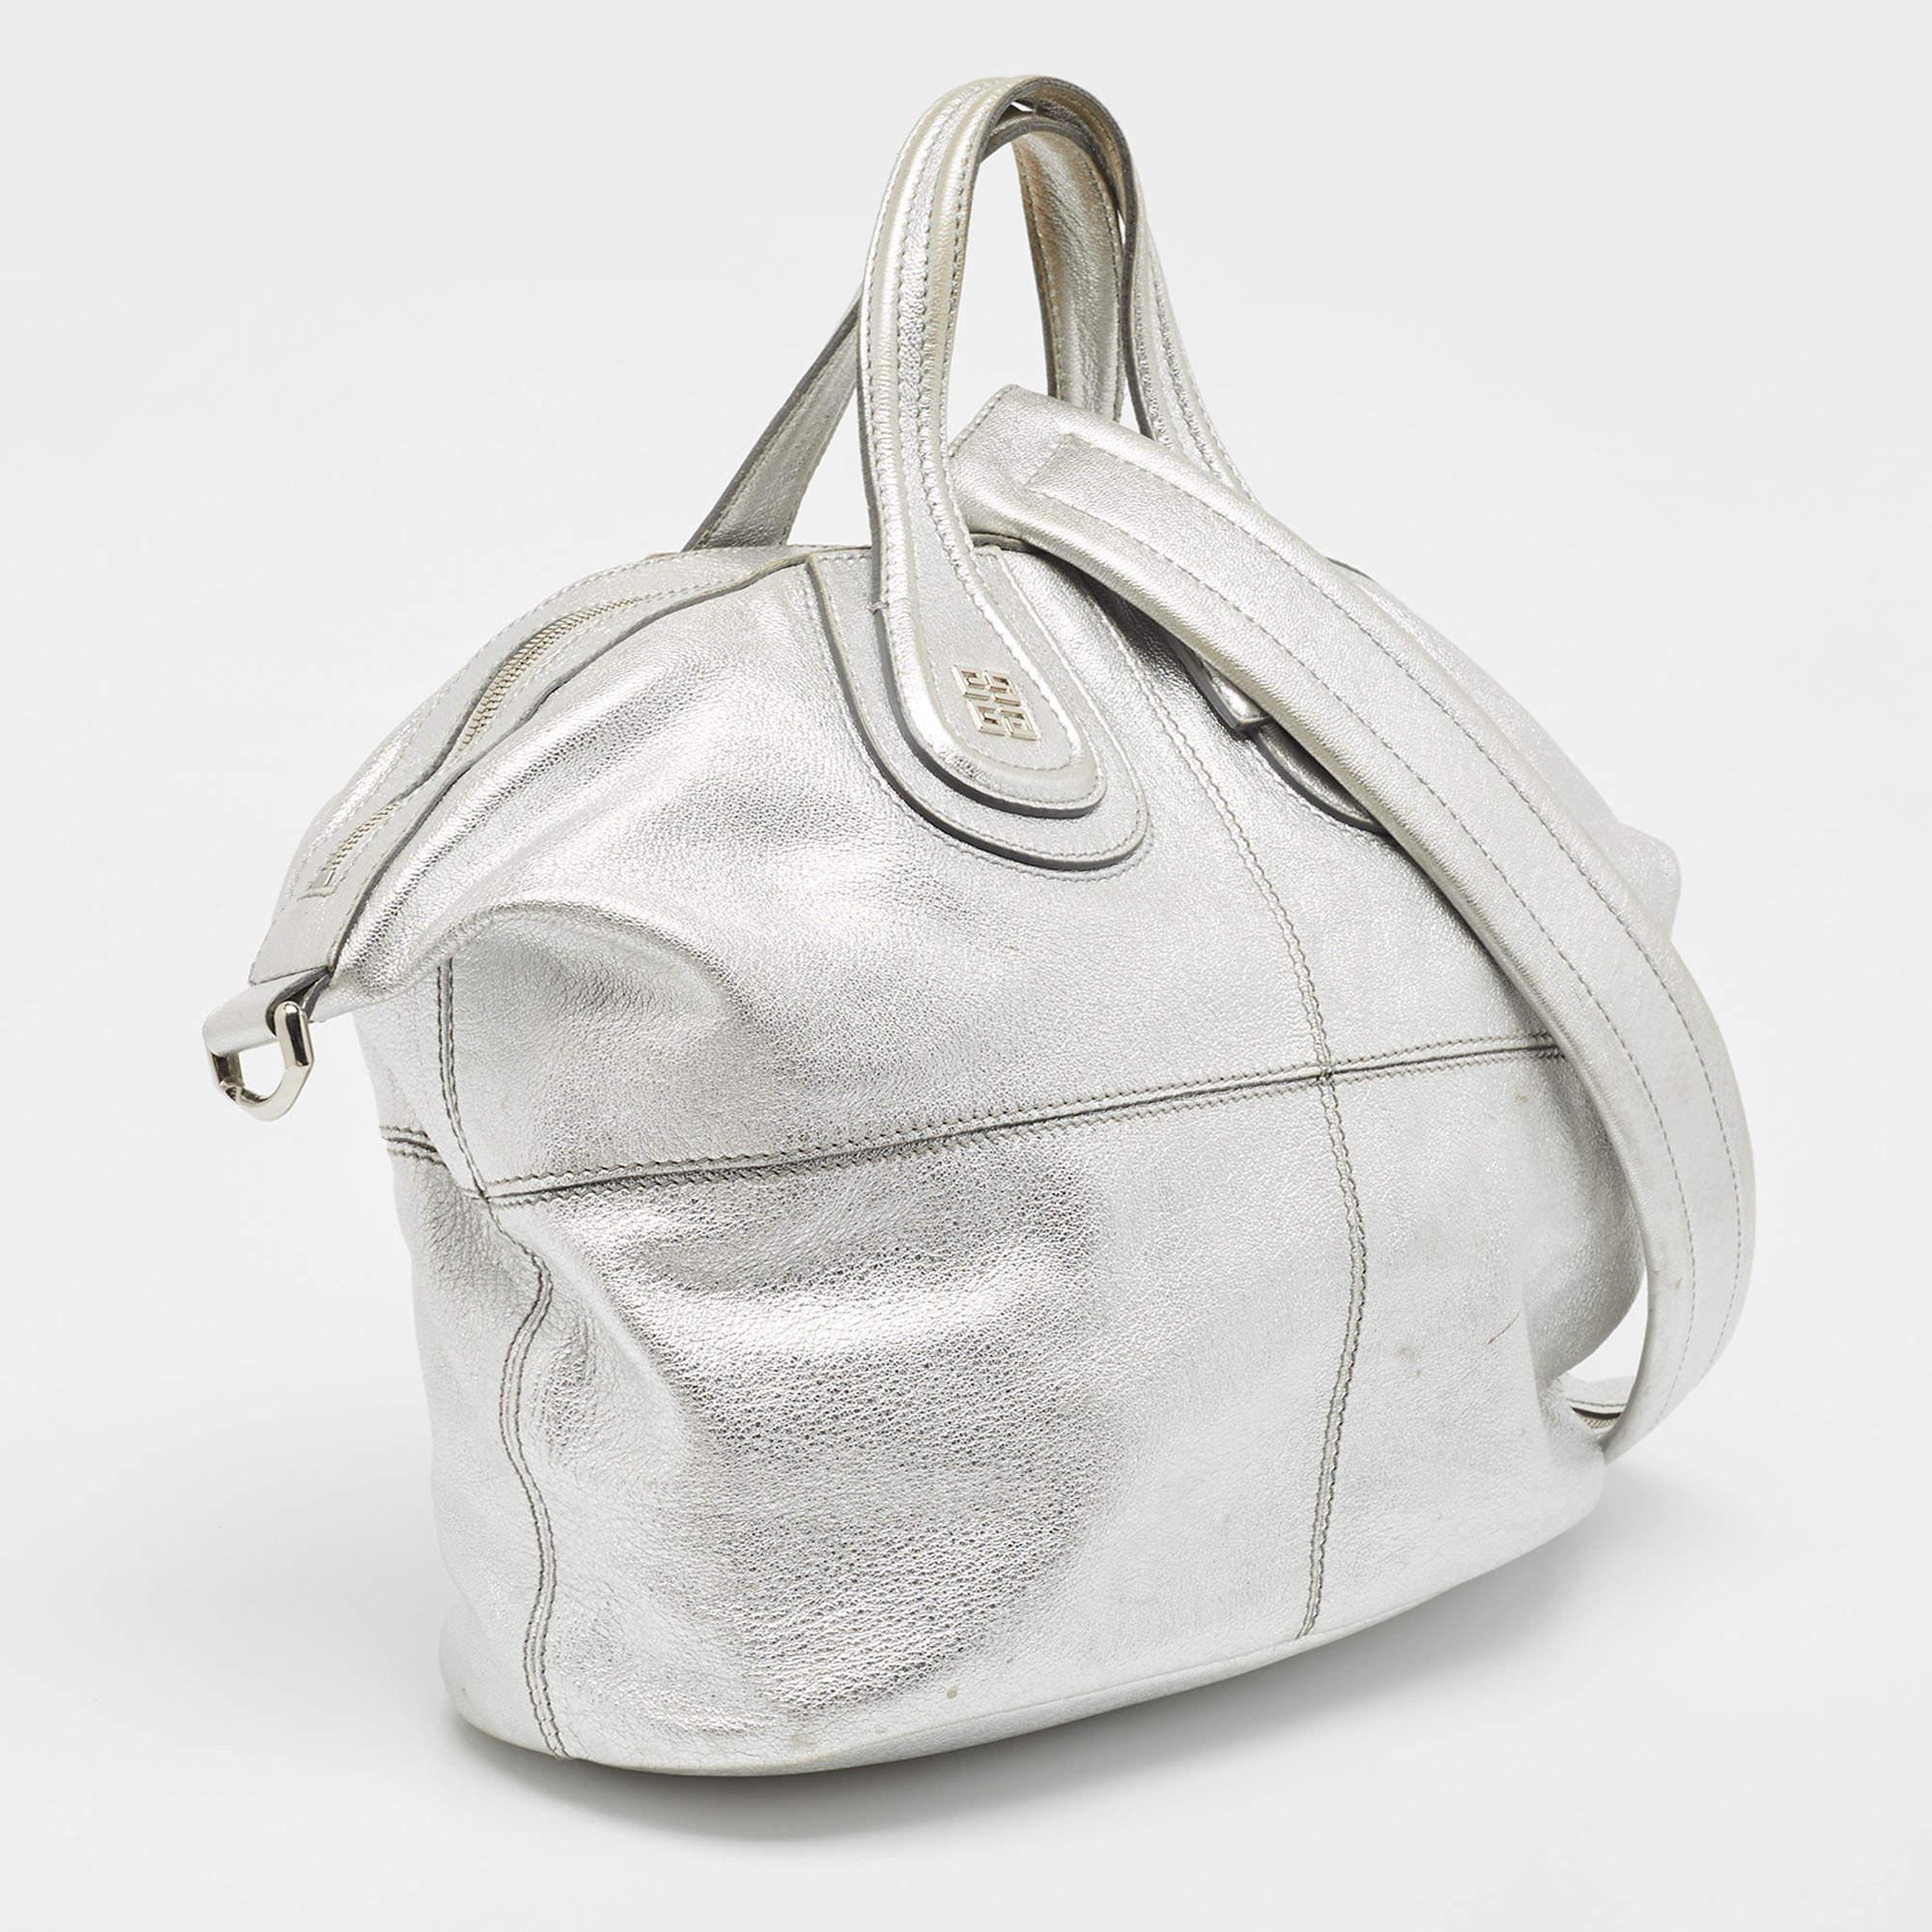 Cette sacoche est conçue pour contenir vos objets essentiels de la manière la plus élégante qui soit ! Facile à coiffer, fabriqué à partir des meilleurs matériaux et provenant de la meilleure marque, ce sac ajoutera un style immense à votre